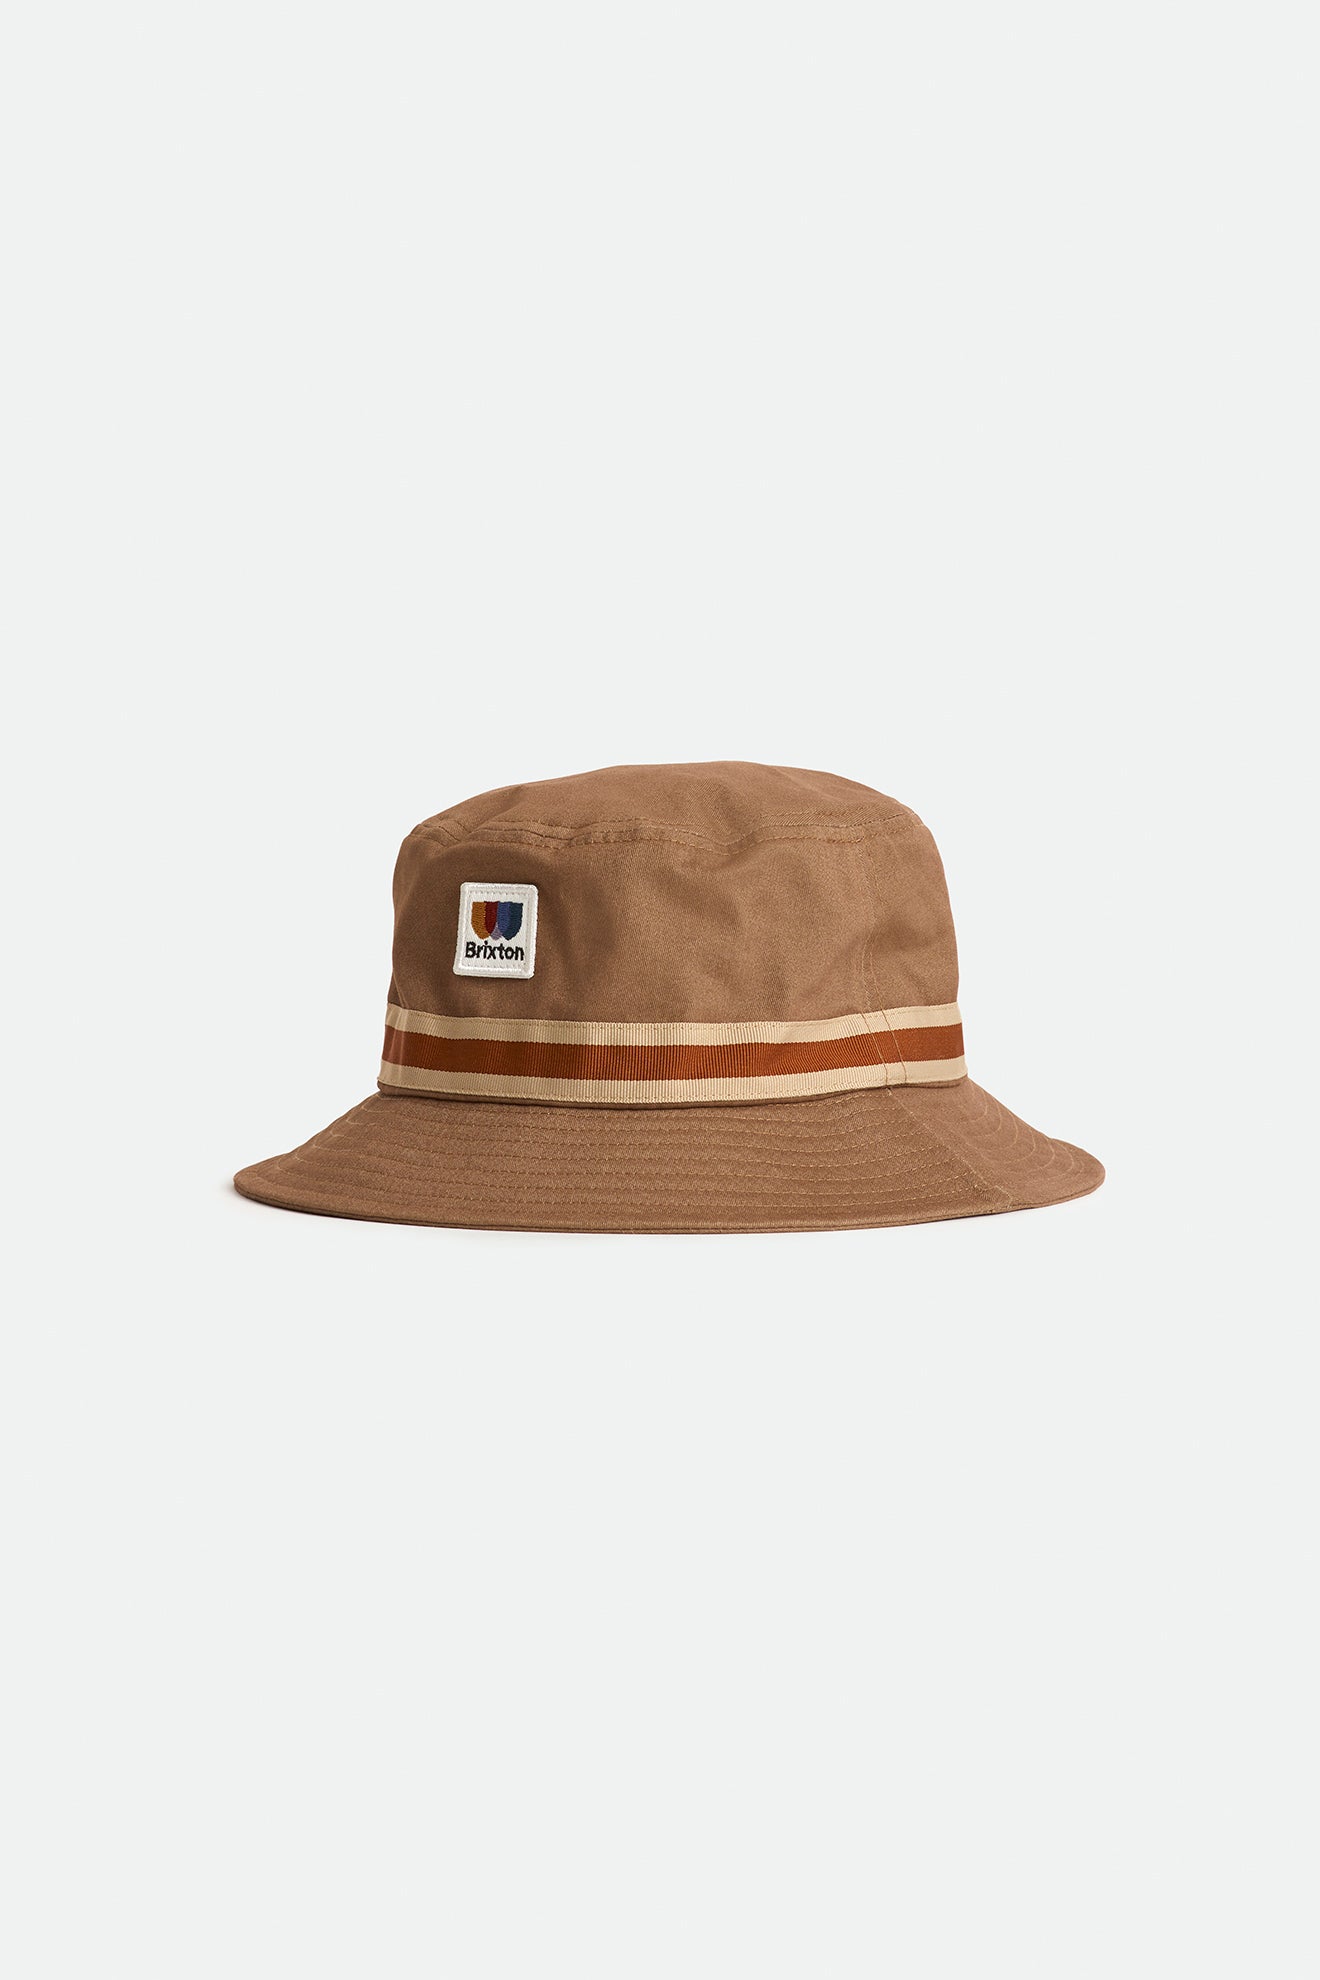 Alton Packable Bucket Hat - Twig/Vanilla